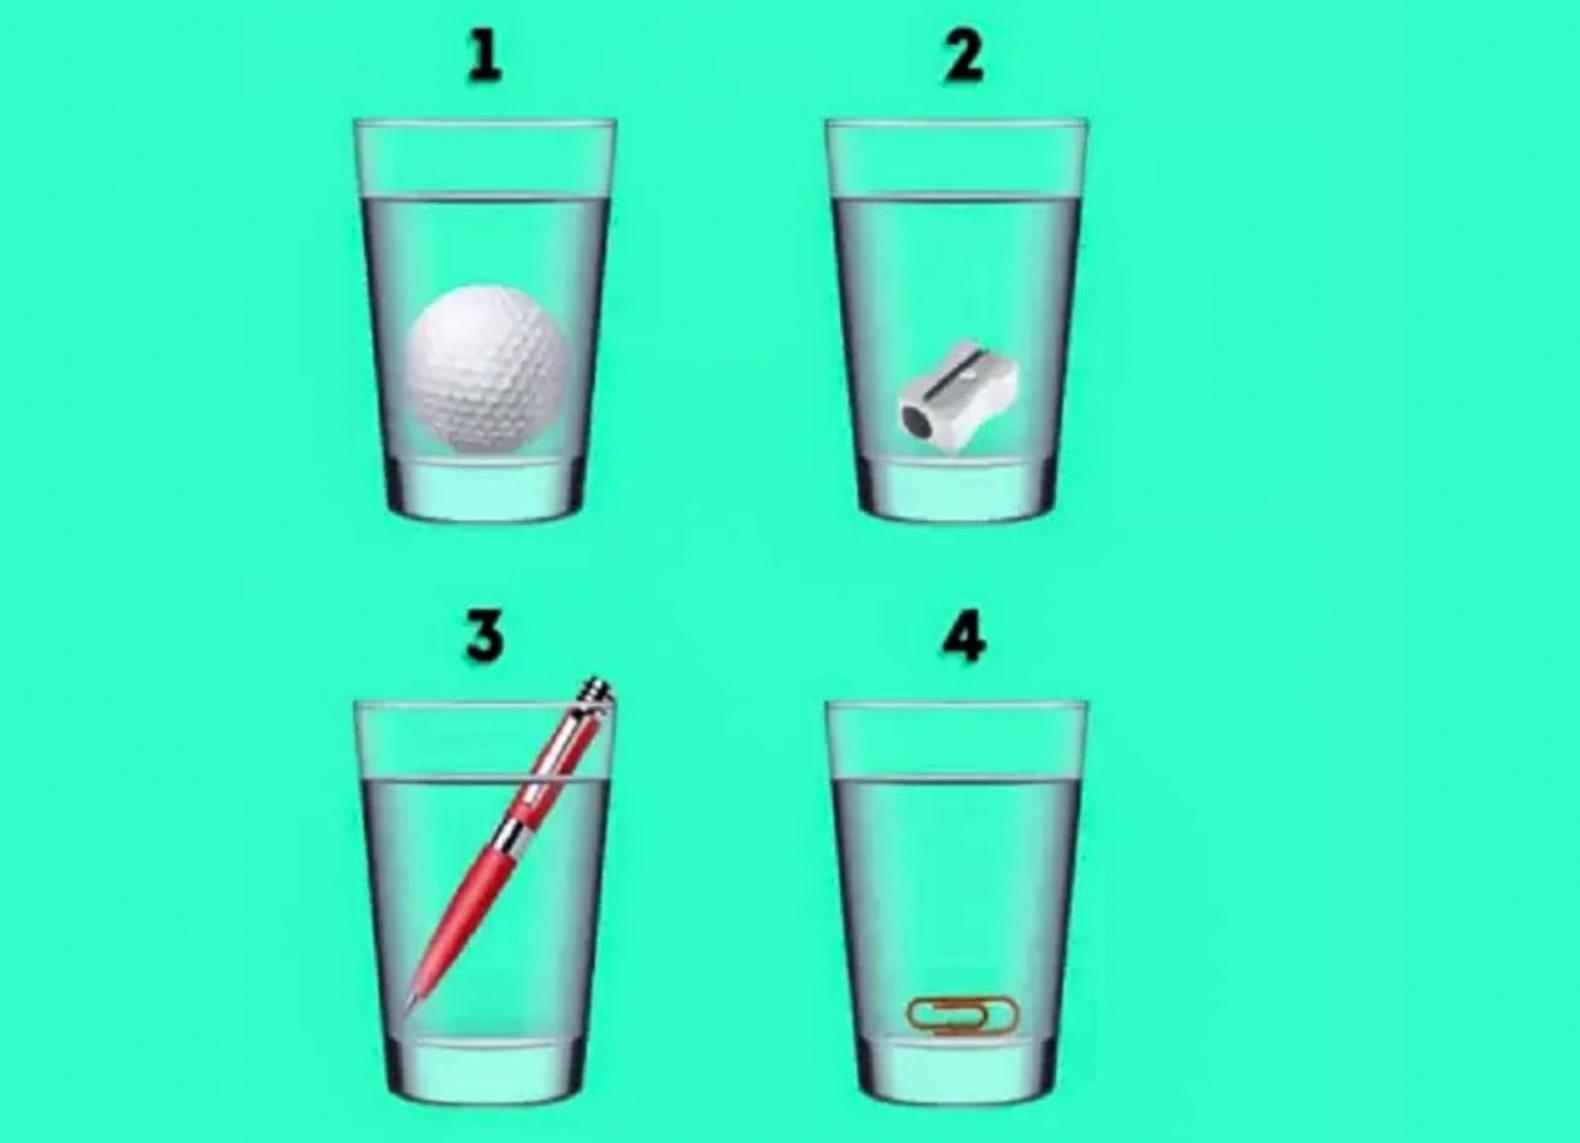 Această iluzie optică ascunde un test de inteligență! Reușești să îți dai seama în ce pahar e mai multă apă?